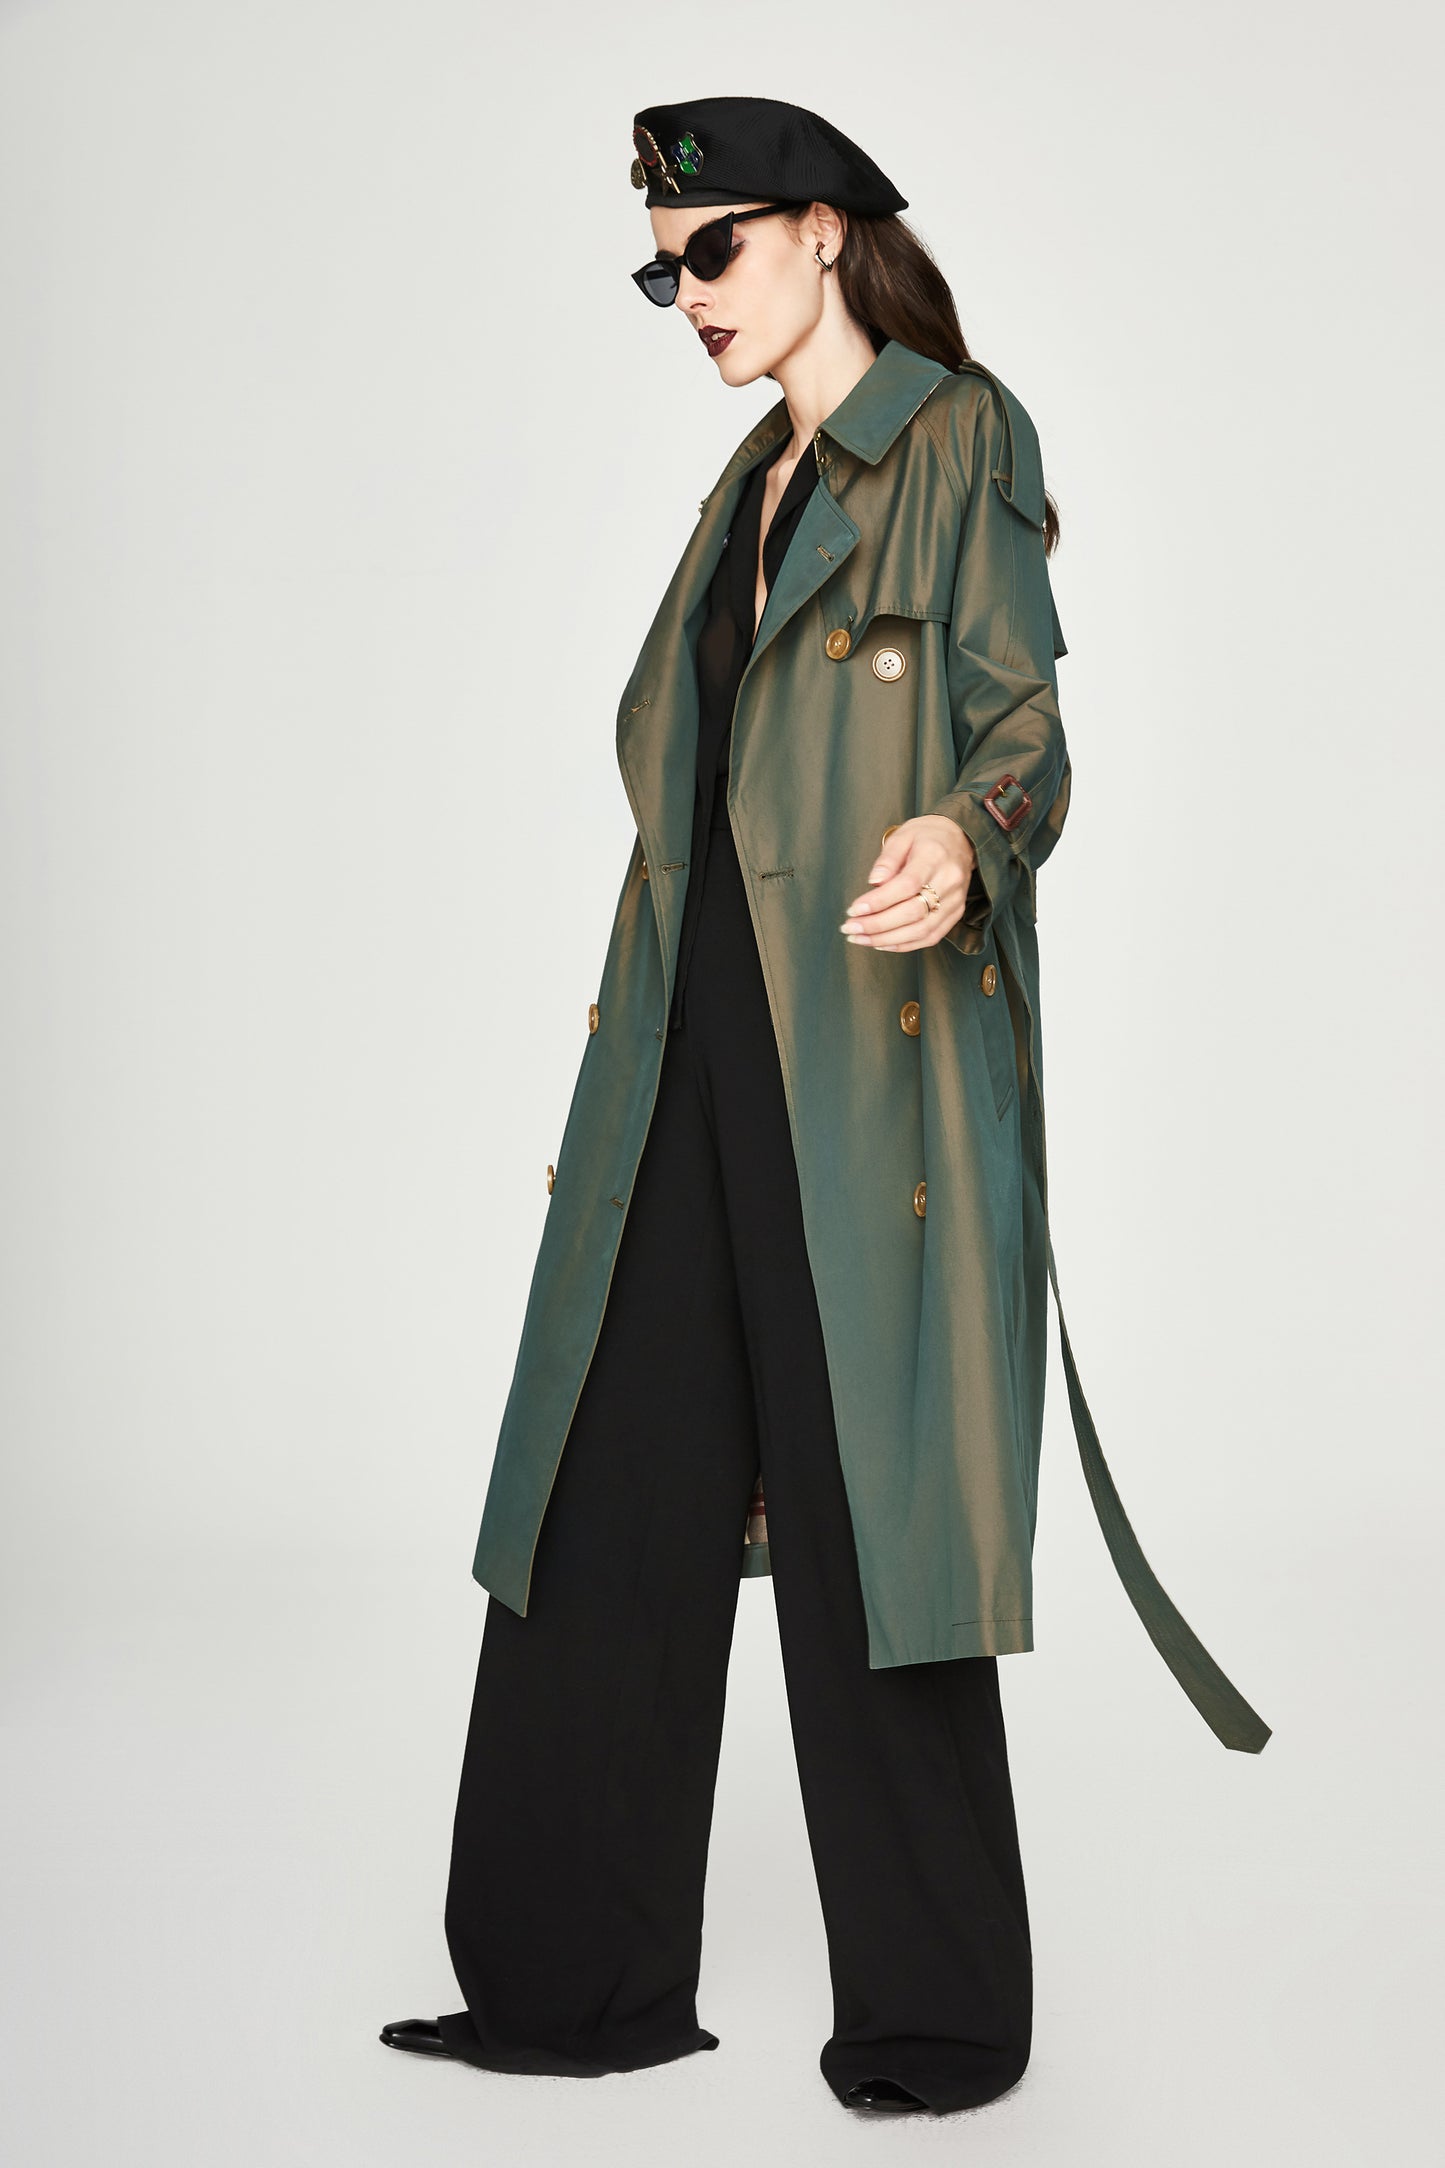 Femme Vêtements Trench-coat allongé à double boutonnage Manteau femme Trench-coat caméléon Manteau femme